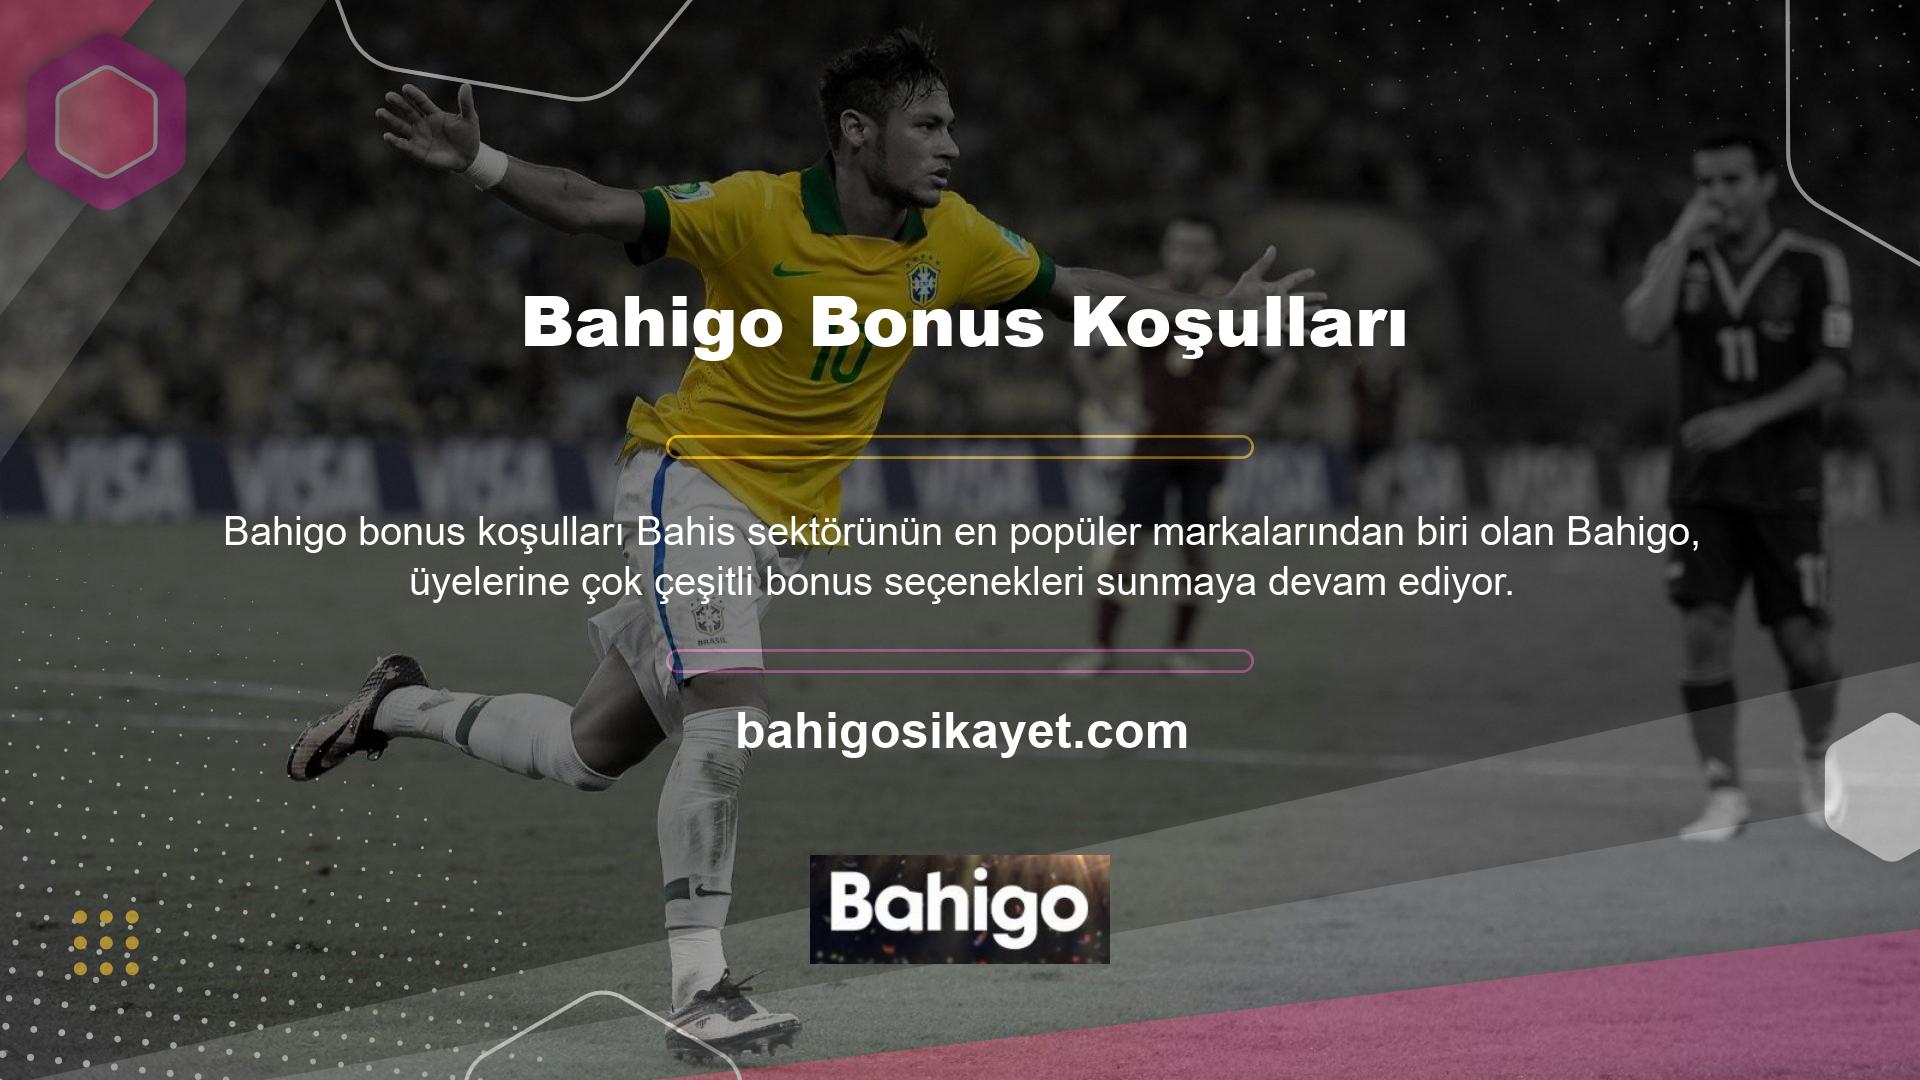 Bu konuda en ilgi çekici kısımlardan biri de Bahigo bonus döngüsü